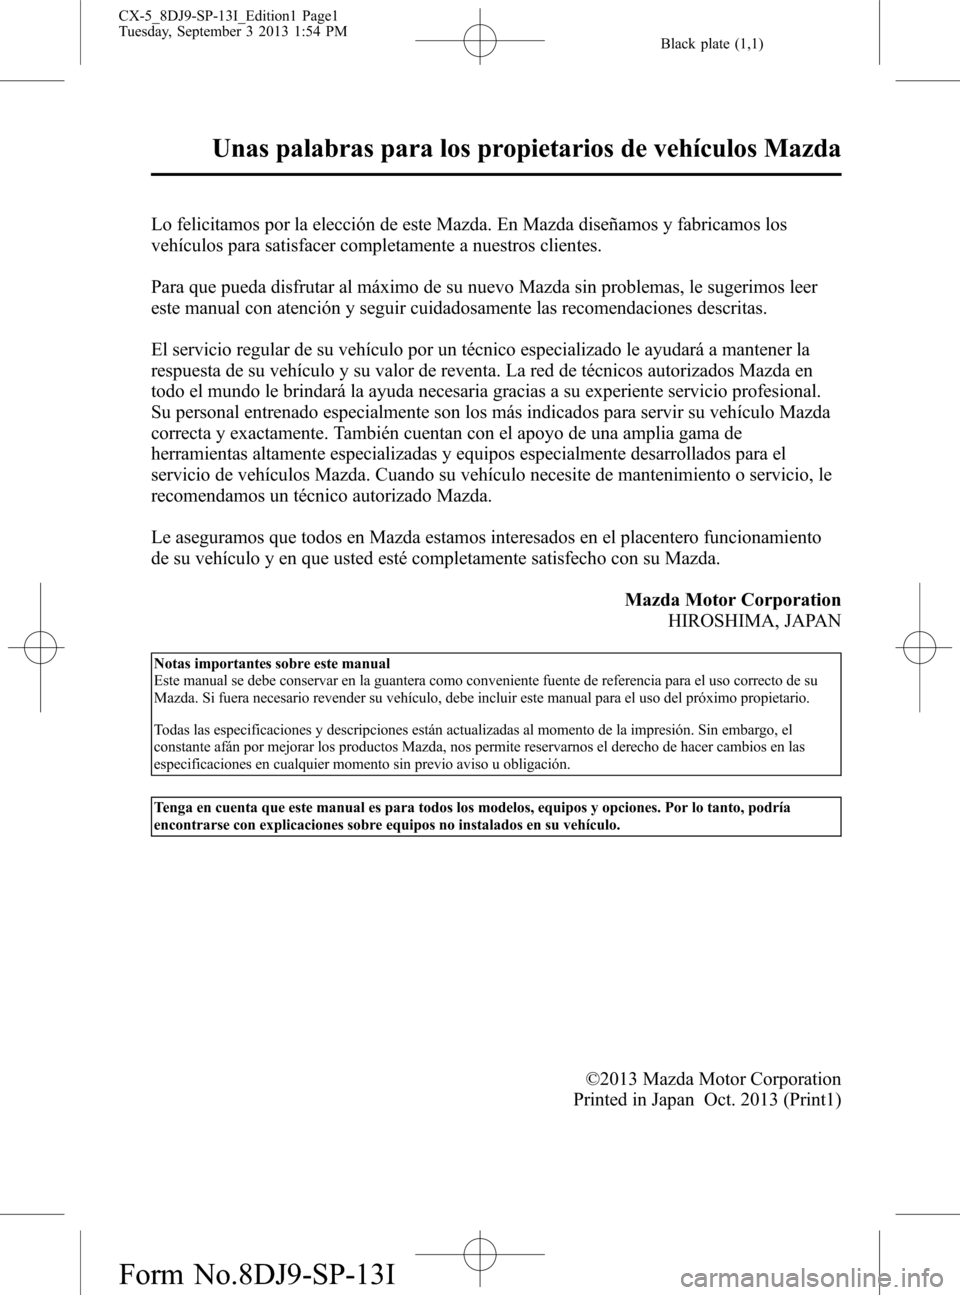 MAZDA MODEL CX-5 2014  Manual del propietario (in Spanish) 